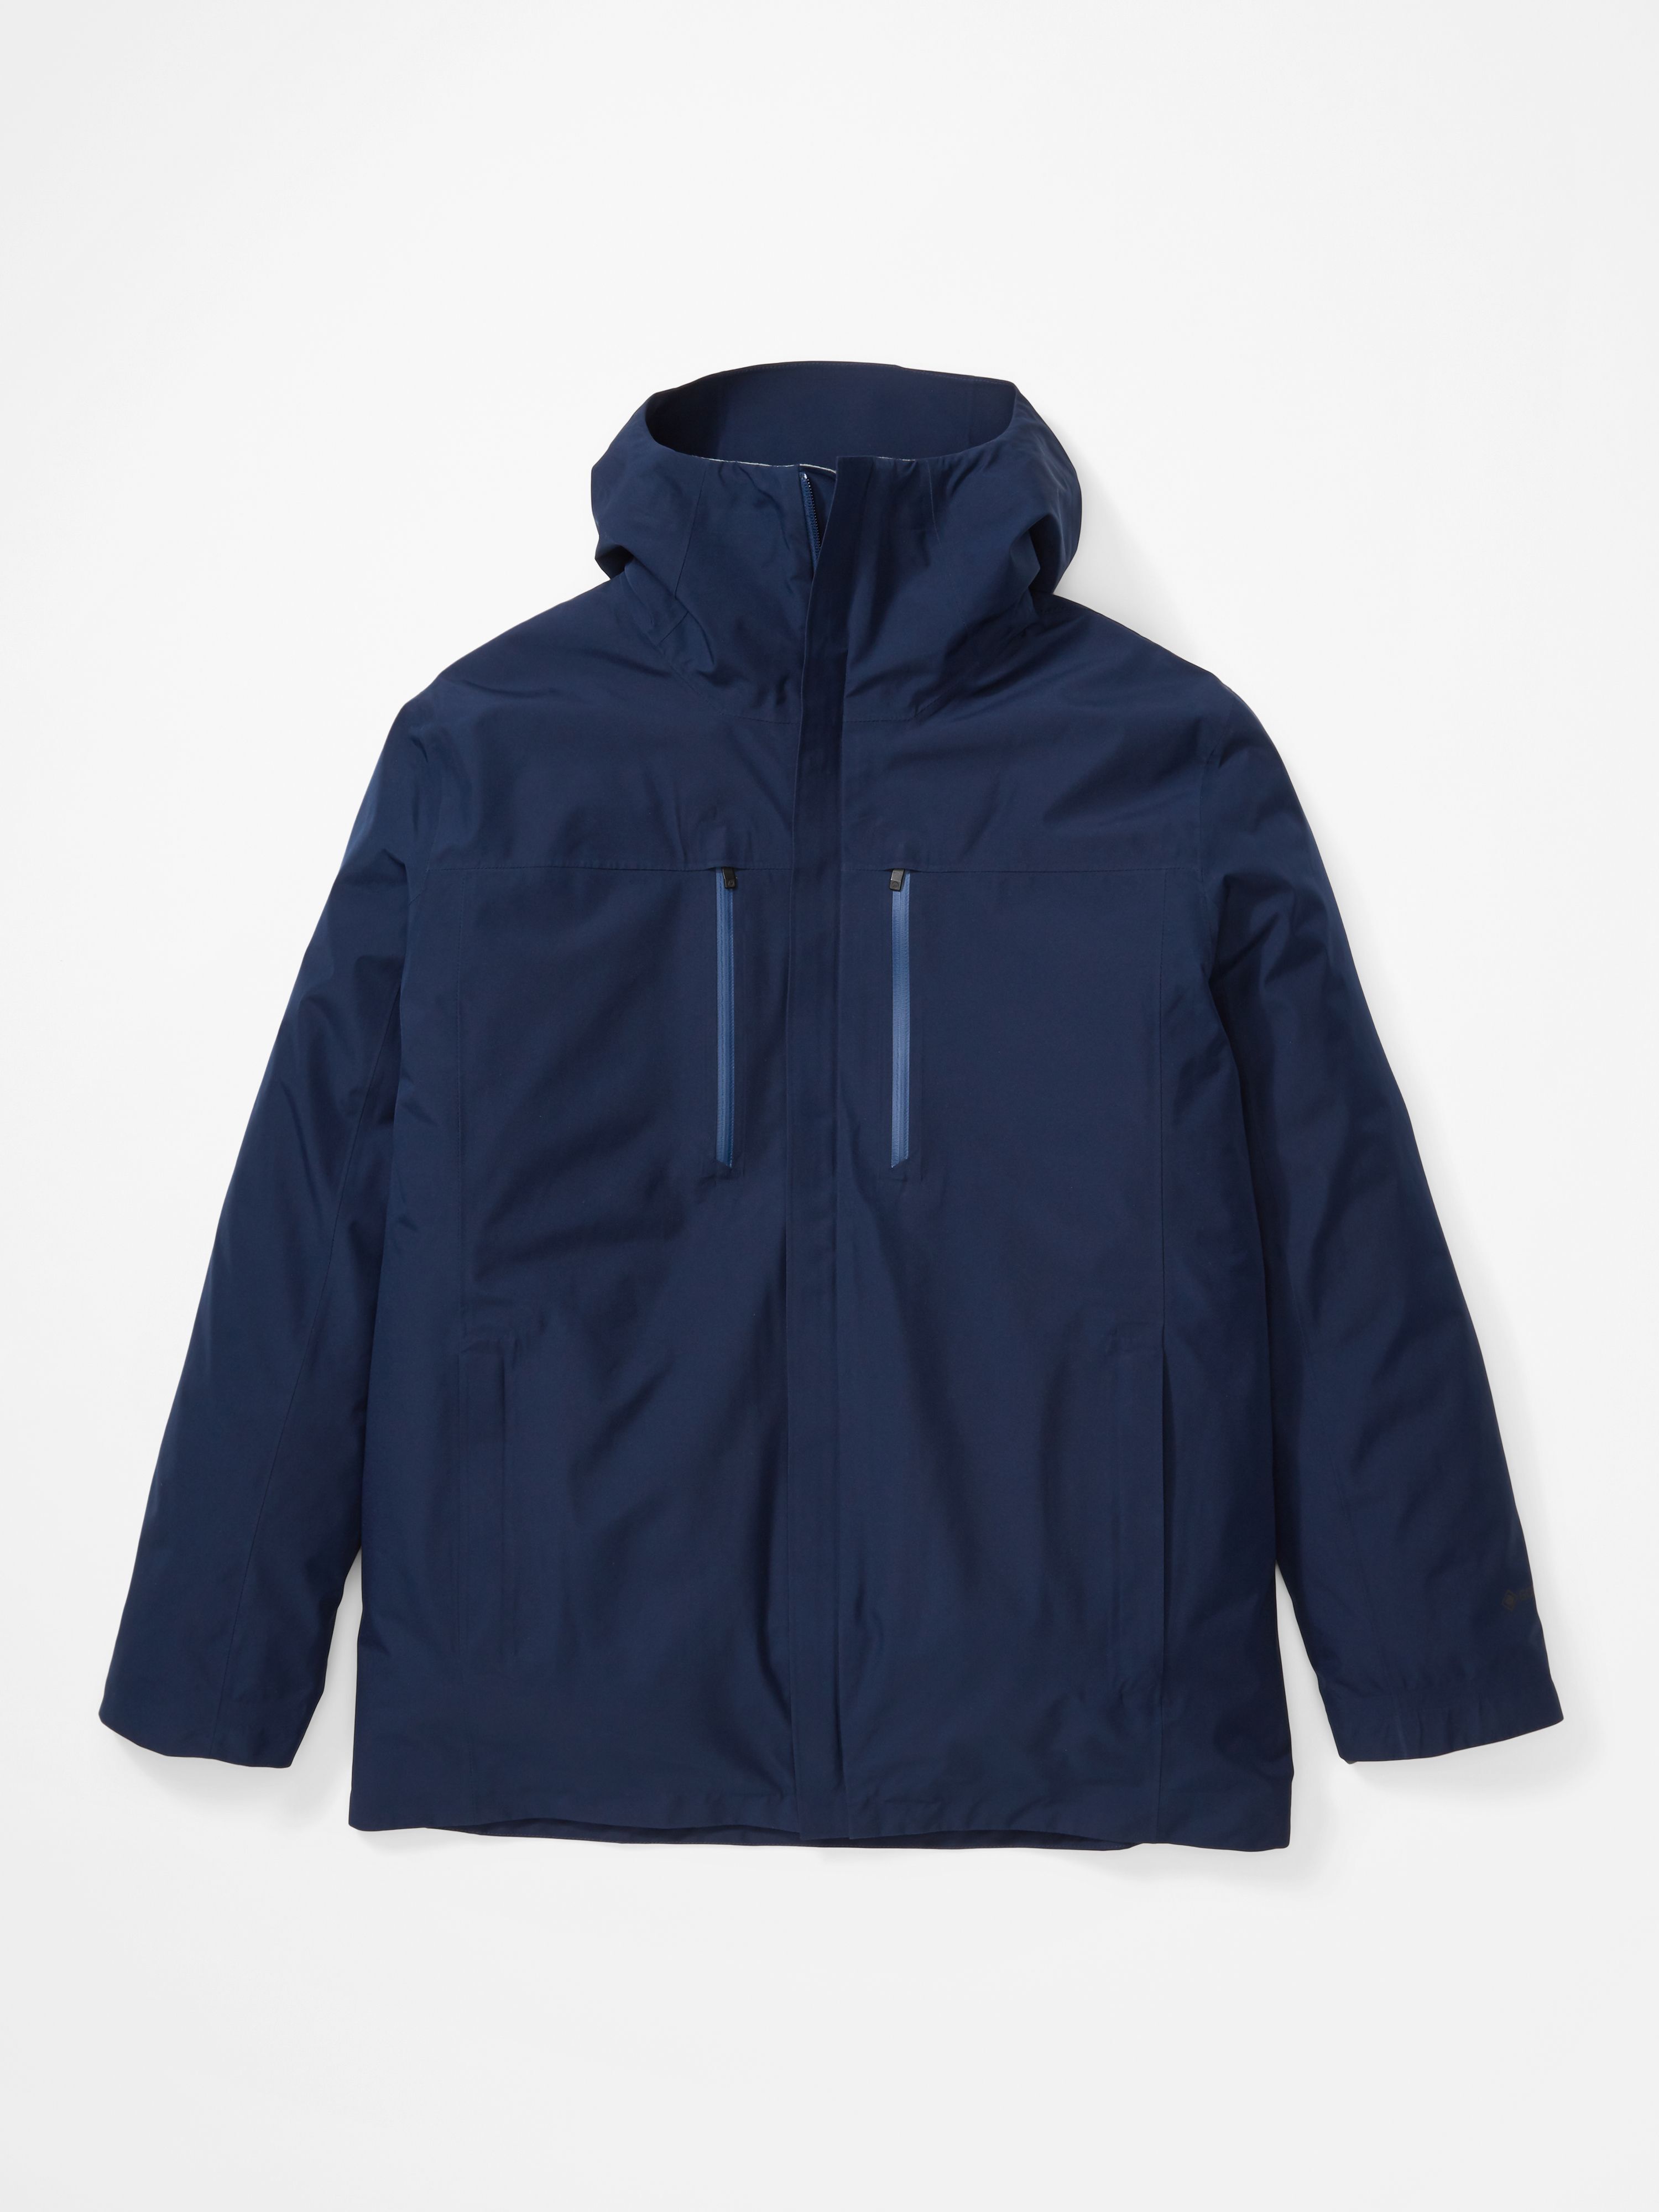 Marmot Bleeker Component Jacket - 3-in-1 jacket - Men's